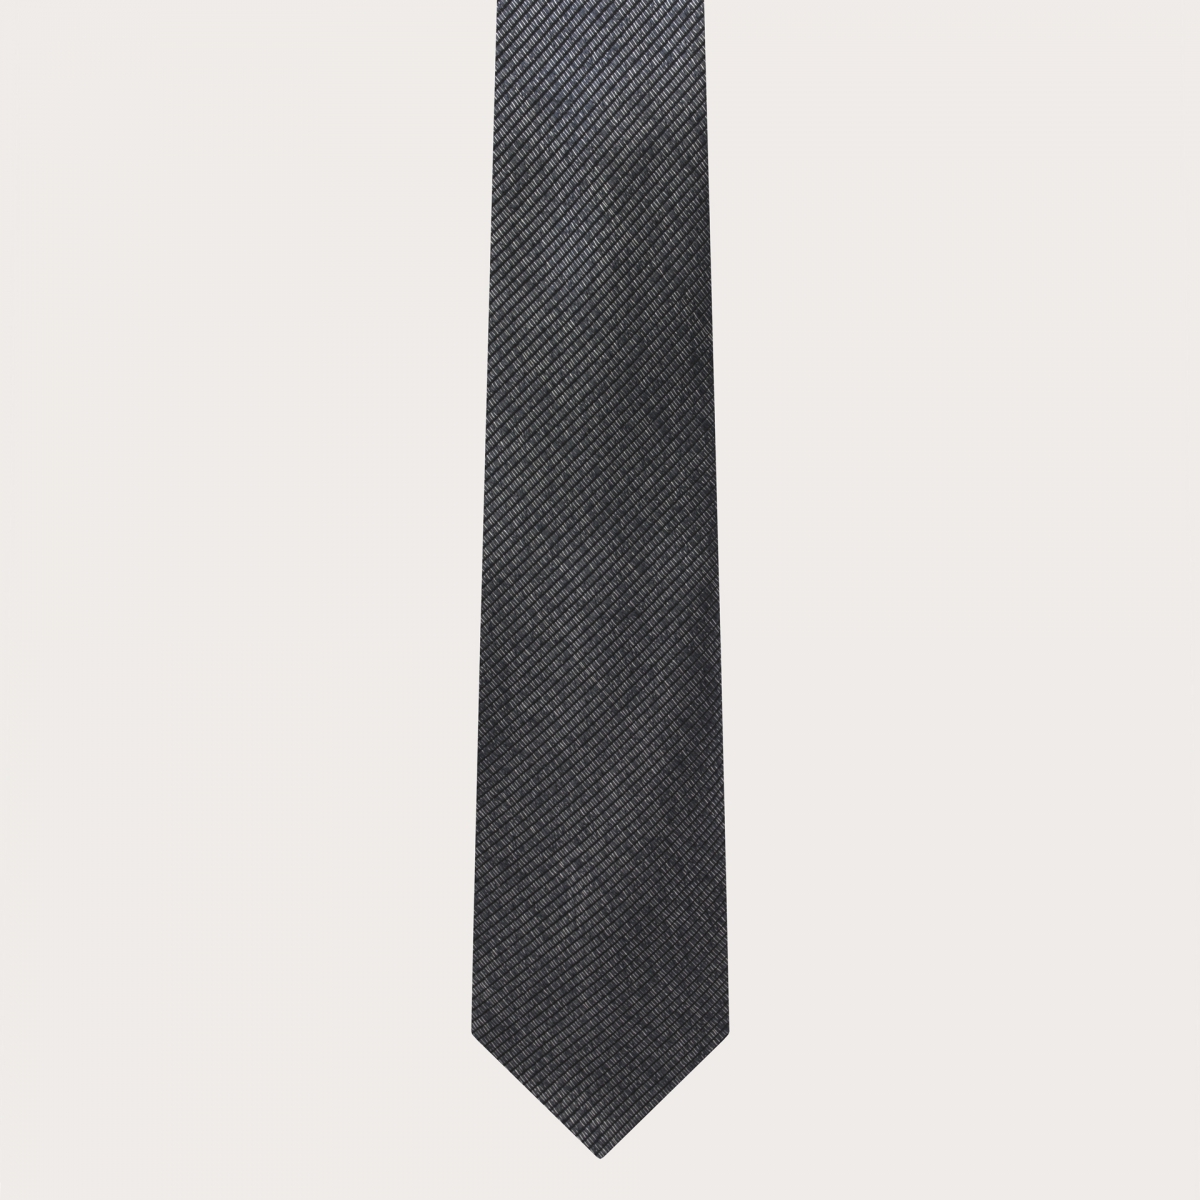 BRUCLE Cravate étroite pour homme en jacquard de soie chiné noir et argent